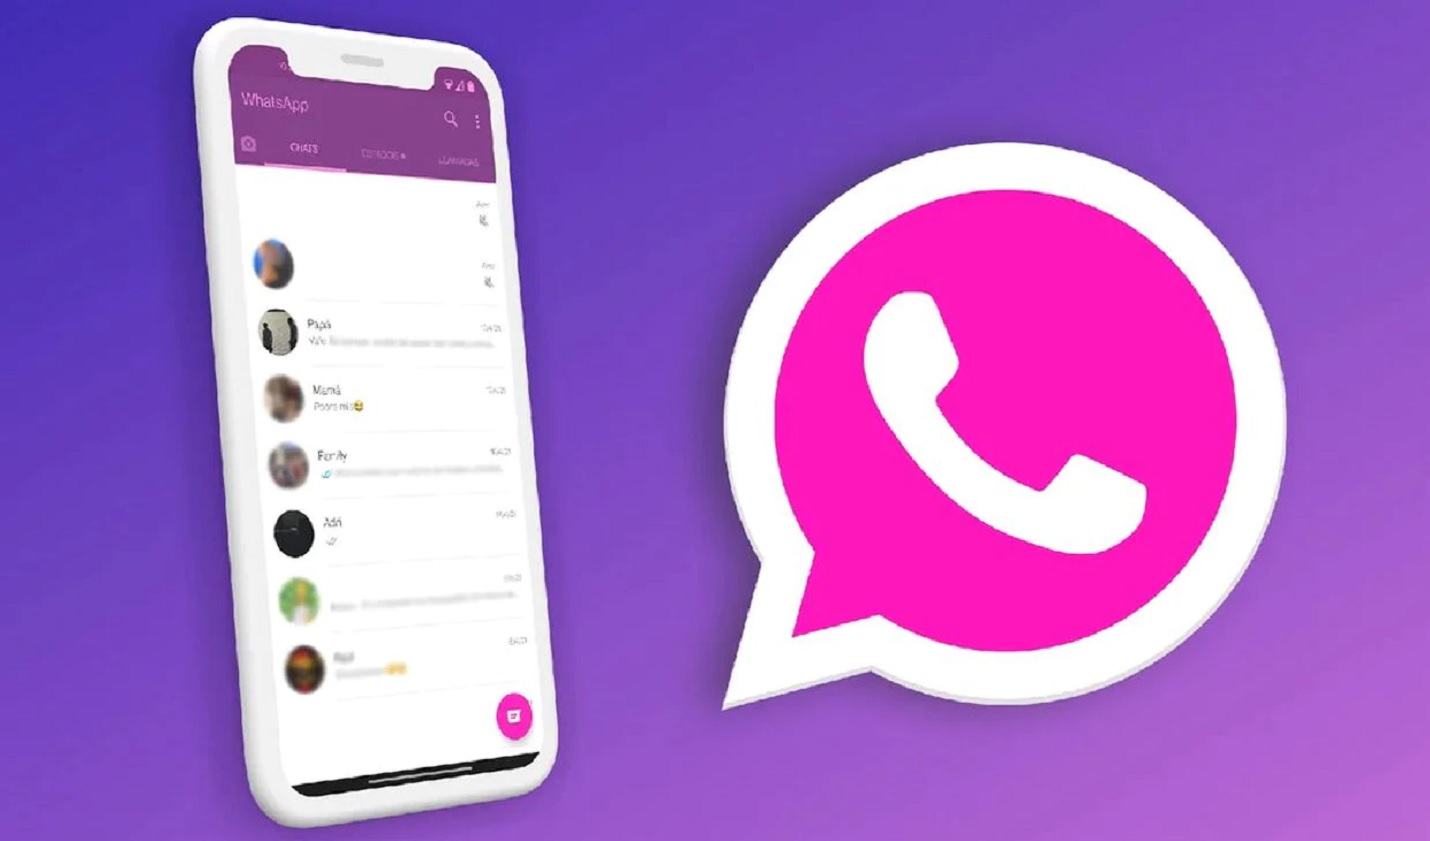 WhatsApp: Cómo cambiar el color del ícono por San Valentín